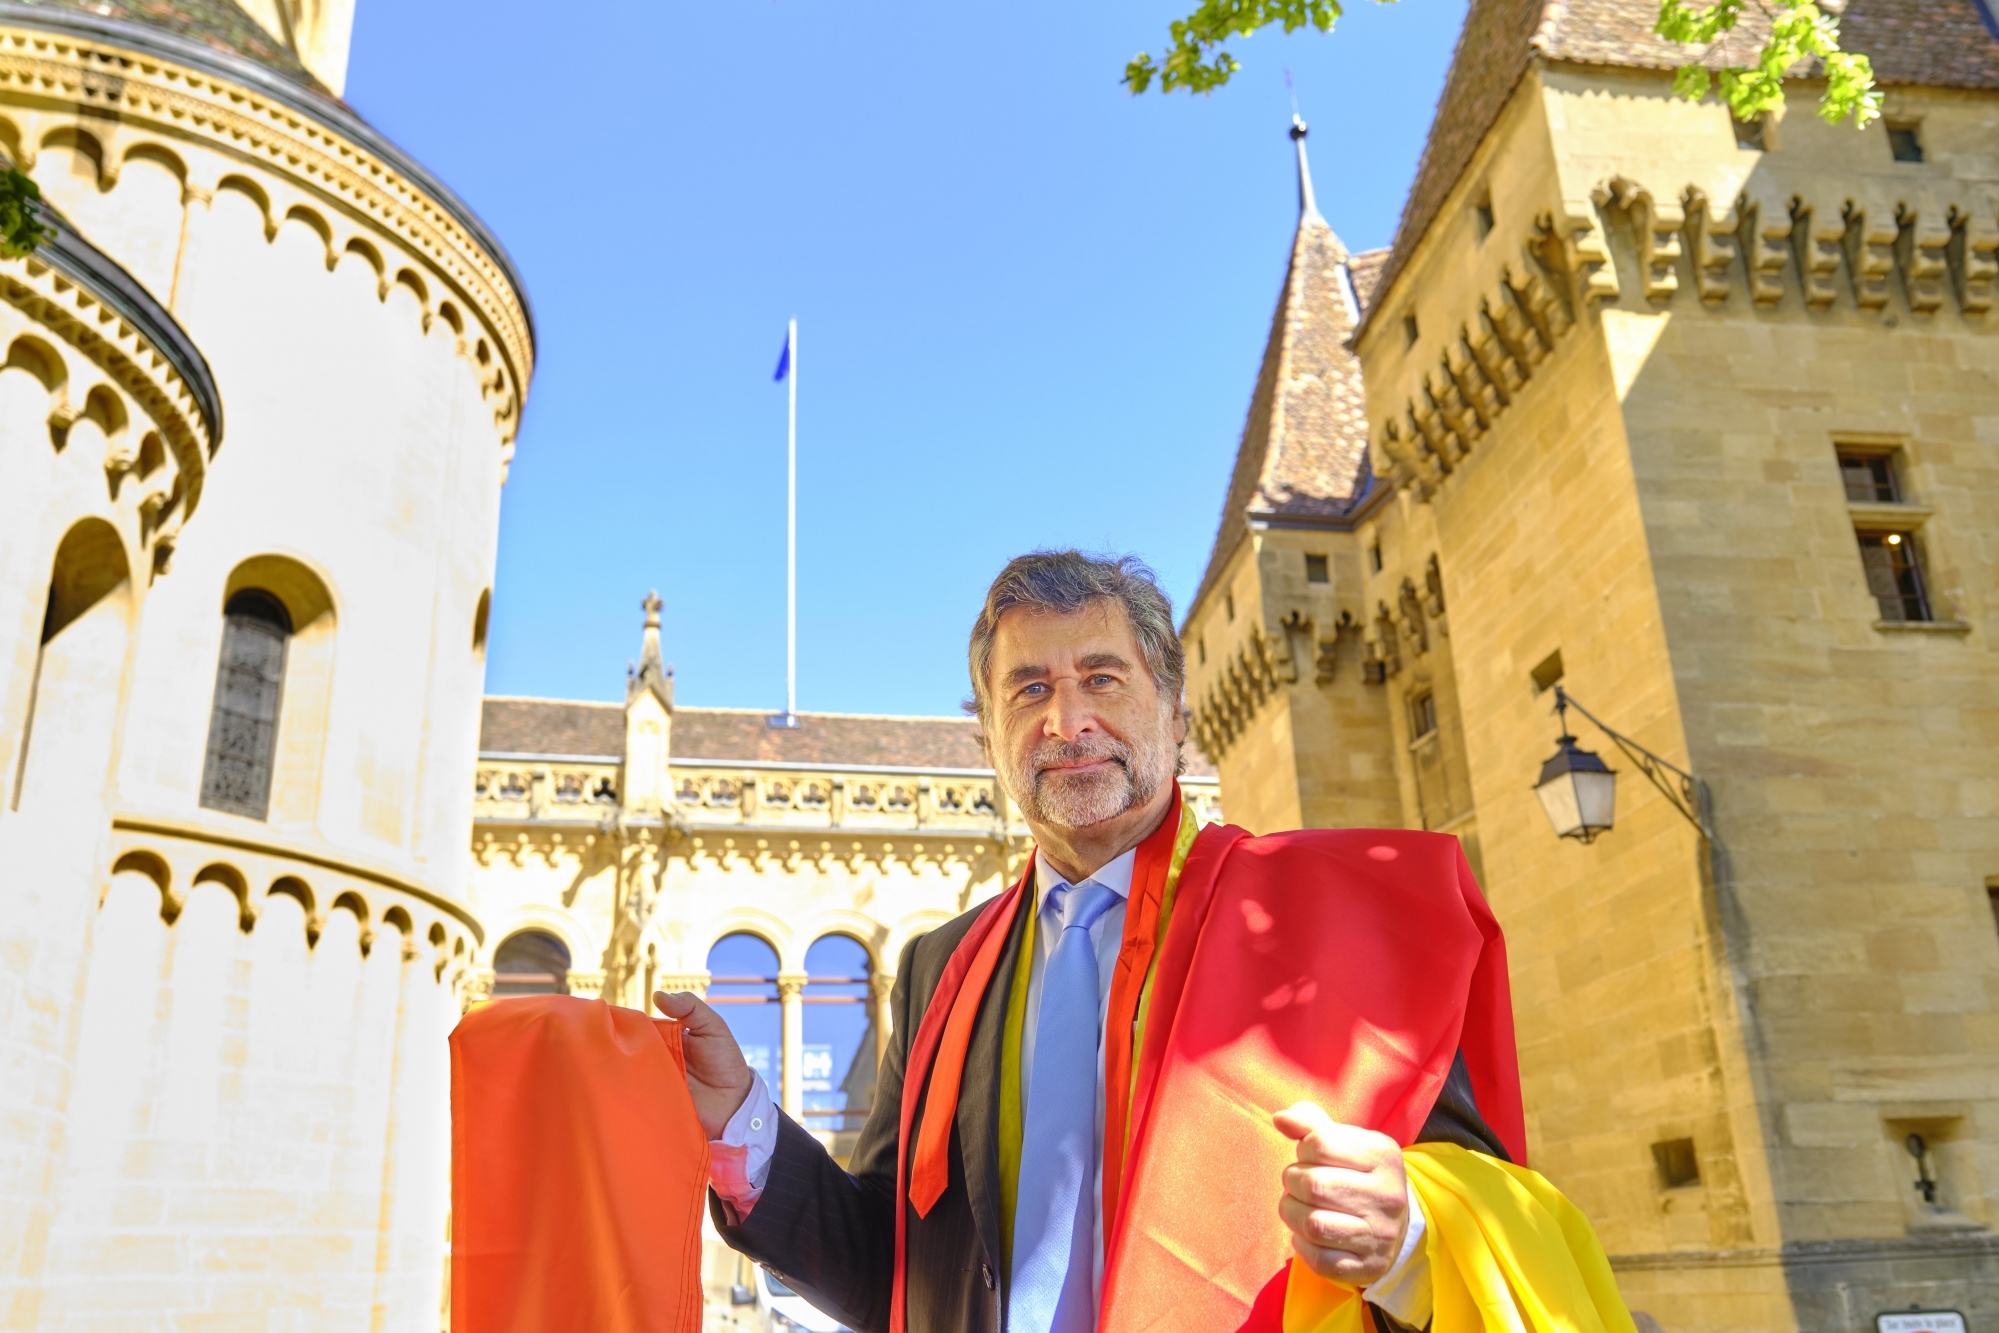 Le médecin cantonal Claude-François Robert avec les drapeaux et ses cravates devant le château où flotte le drapeau bleu.